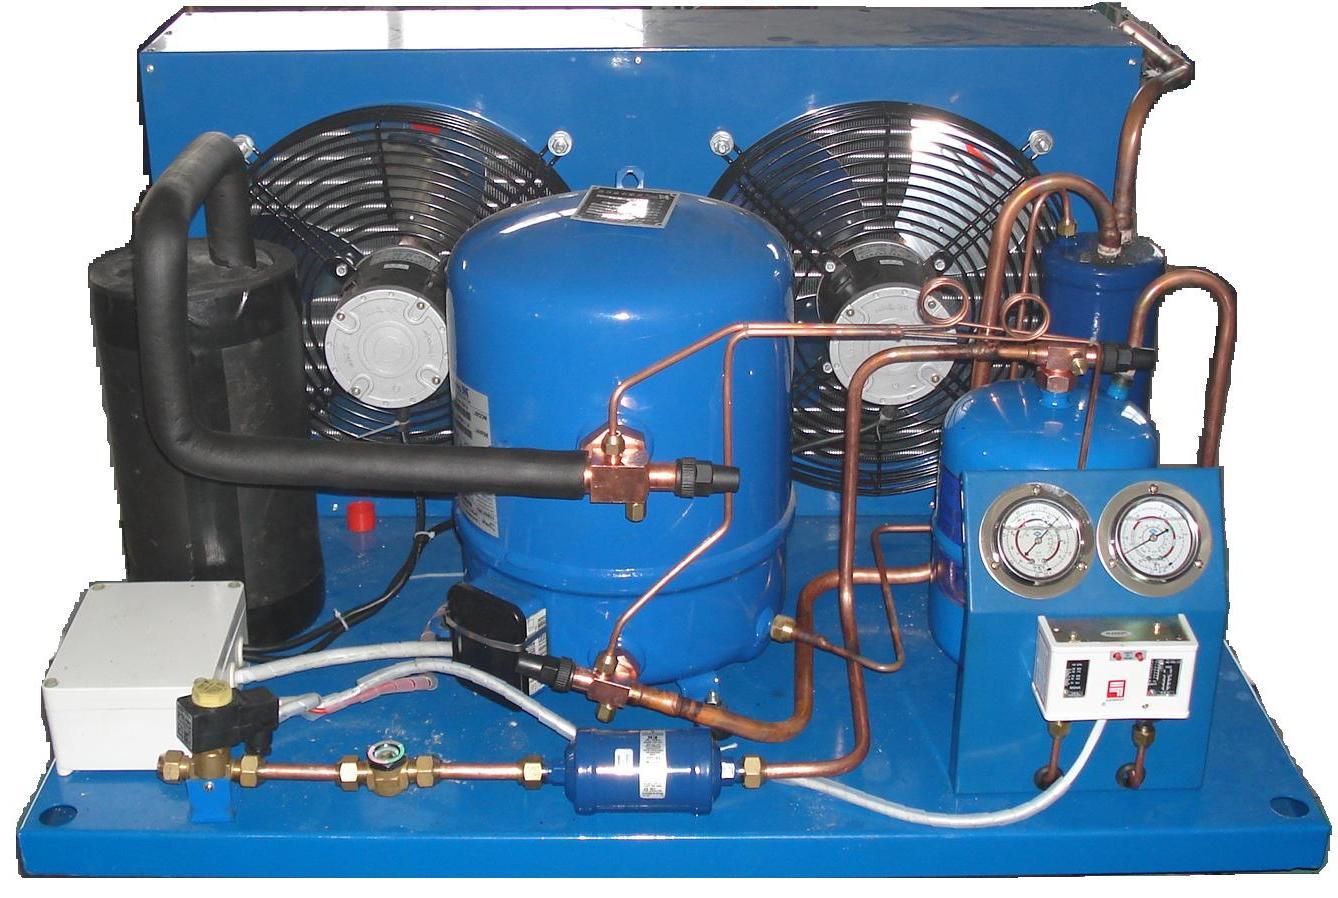 Компрессоры холодильных машин. Компрессор Maneurop mt160hw4eve. Холодильный агрегат "Maneurop». Холодильный агрегат на базе компрессора mt40jh4eve. Холодильный агрегат Bitzer 3 YC-3.2.